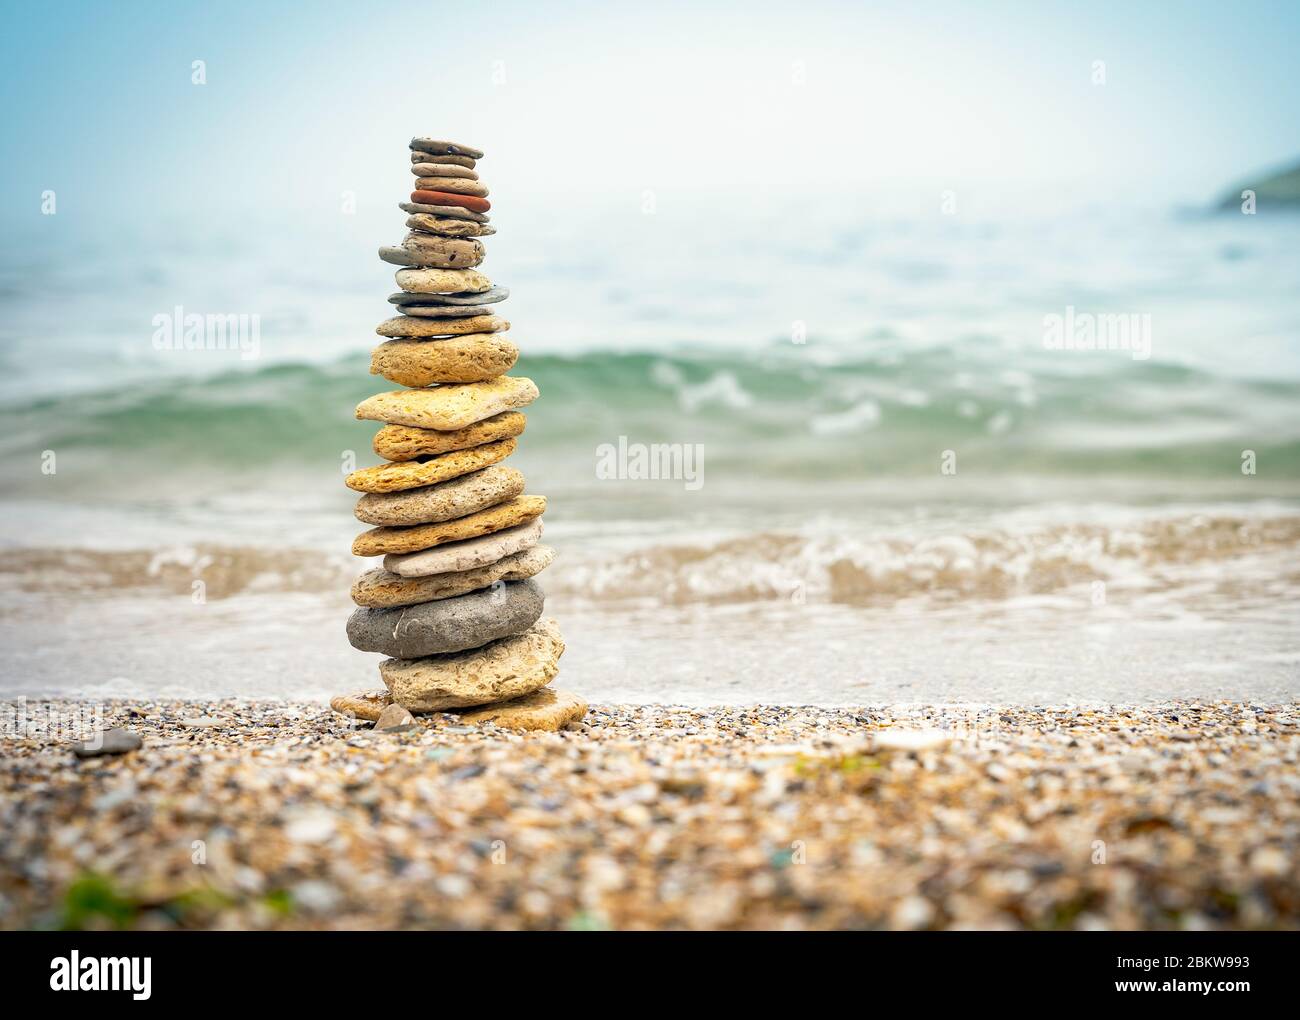 Pirámide de piedras sobre arena que simboliza zen, armonía, equilibrio. Energía positiva. Océano en el fondo Foto de stock